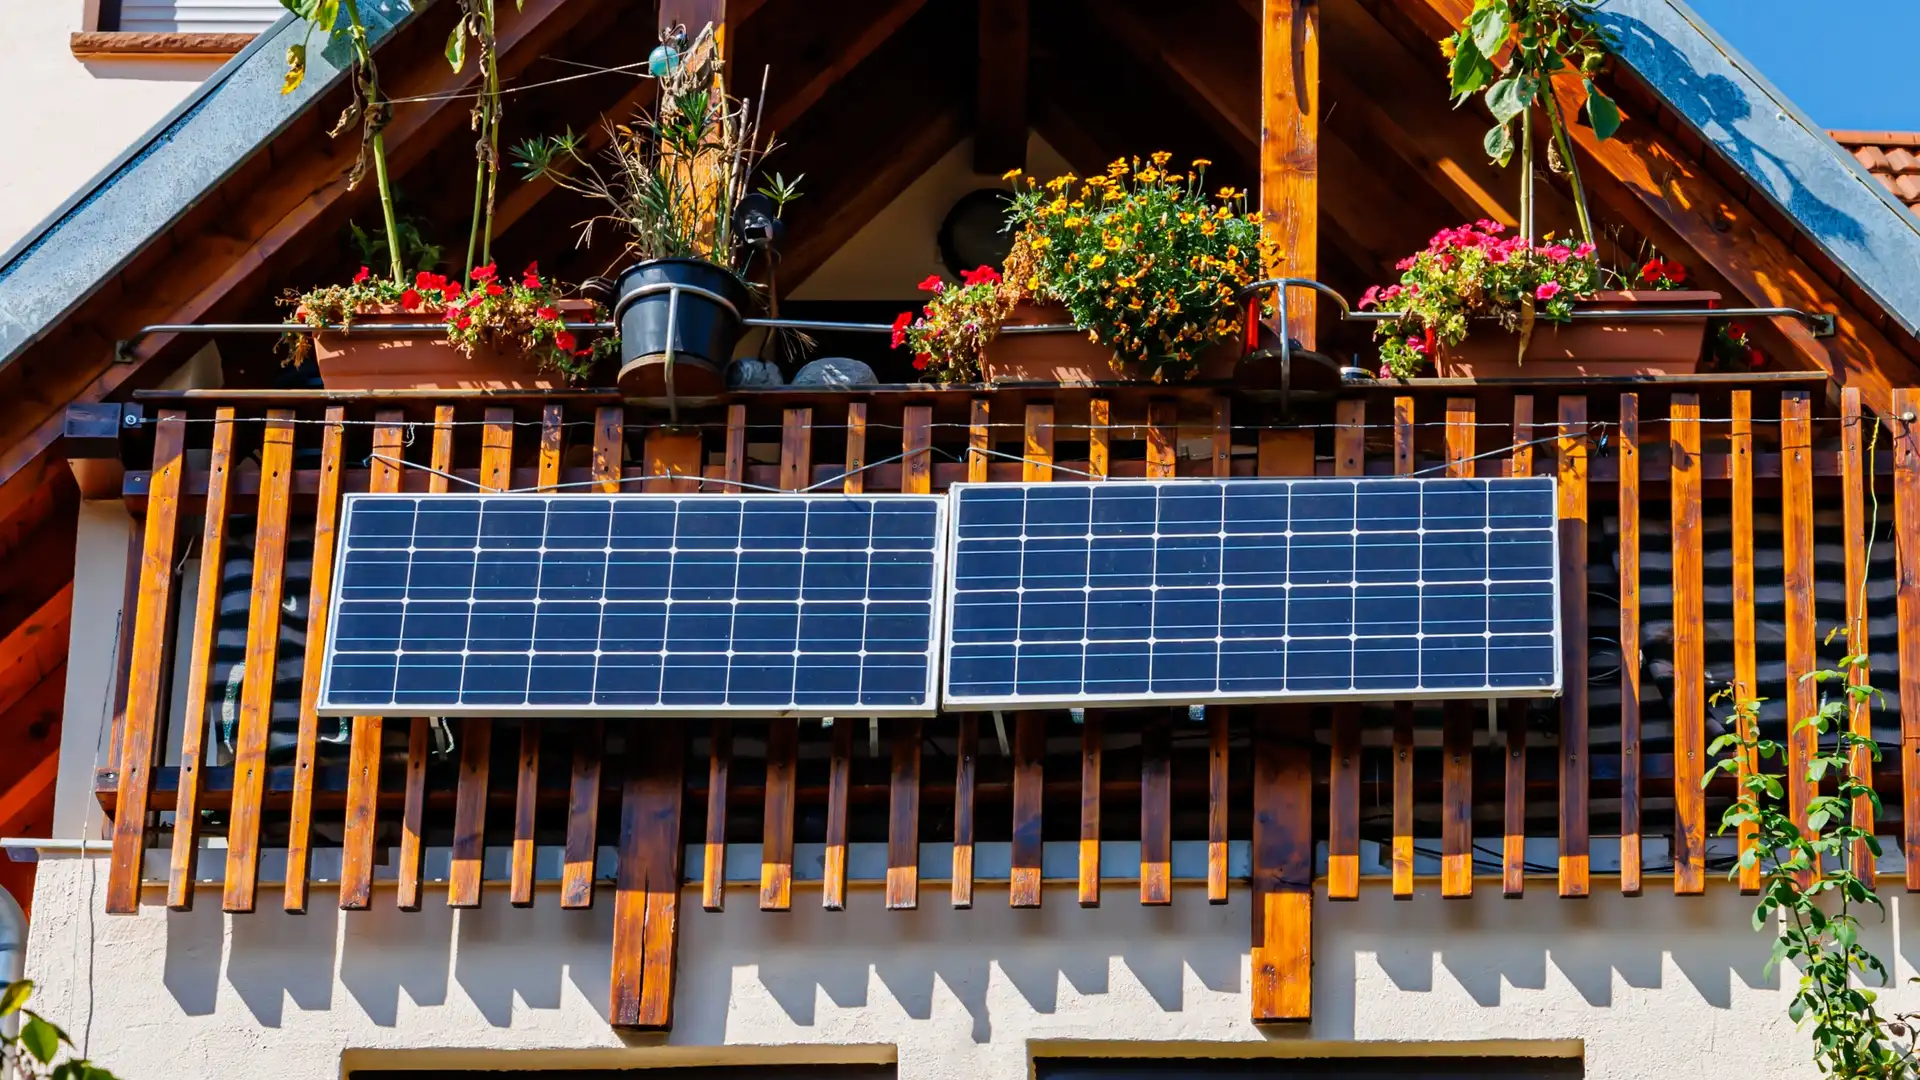 Istalacion de placas solares en una segunda vivienda para representar el autoconsumo de energia solar en estas casas